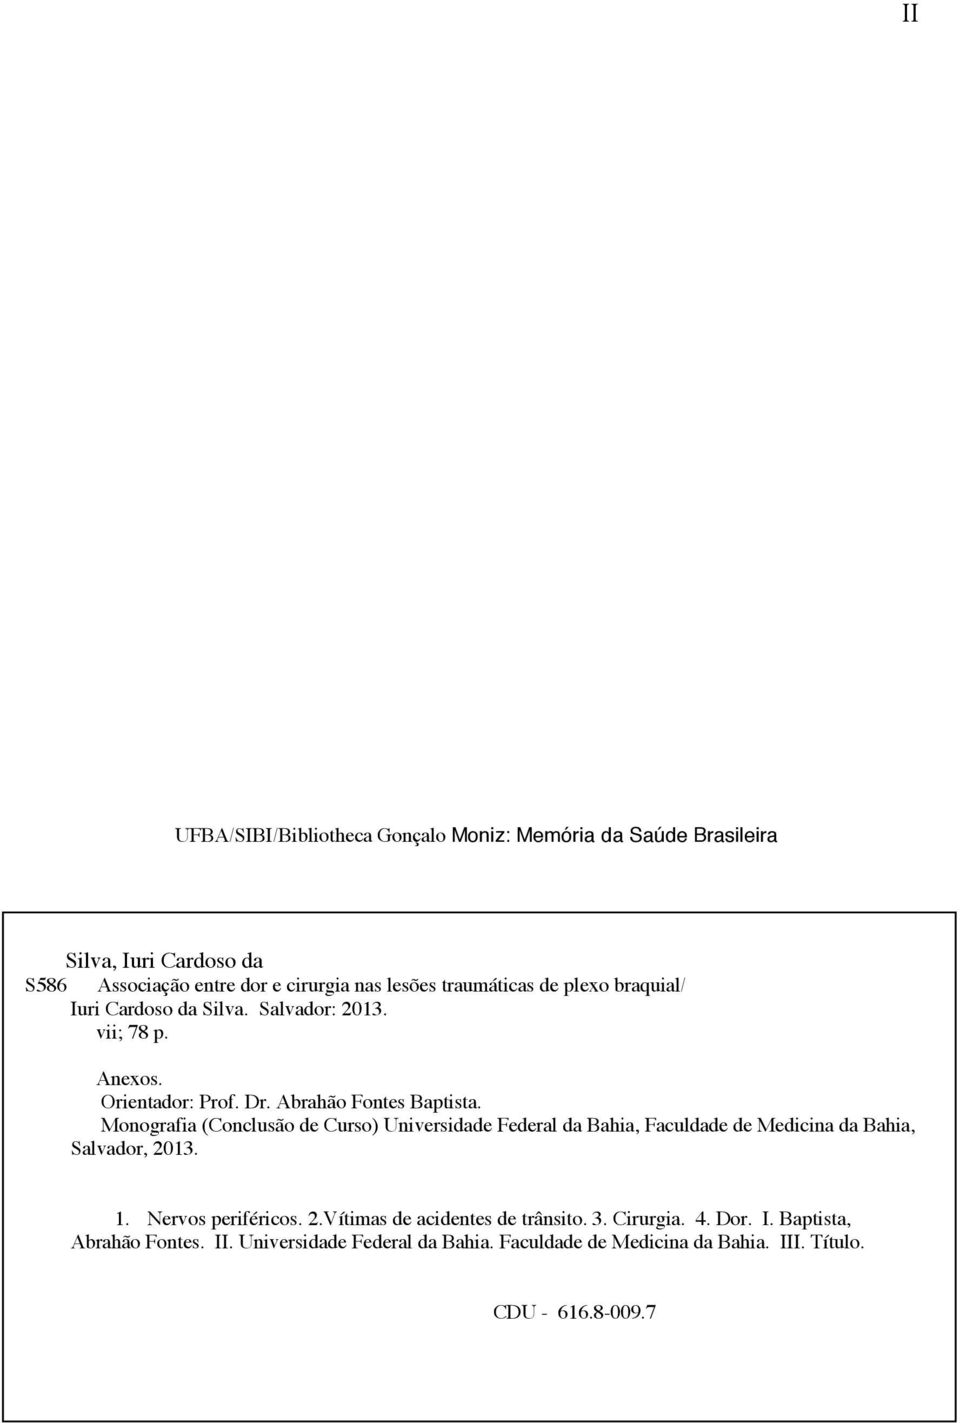 Monografia (Conclusão de Curso) Universidade Federal da Bahia, Faculdade de Medicina da Bahia, Salvador, 2013. 1. Nervos periféricos. 2.Vítimas de acidentes de trânsito.